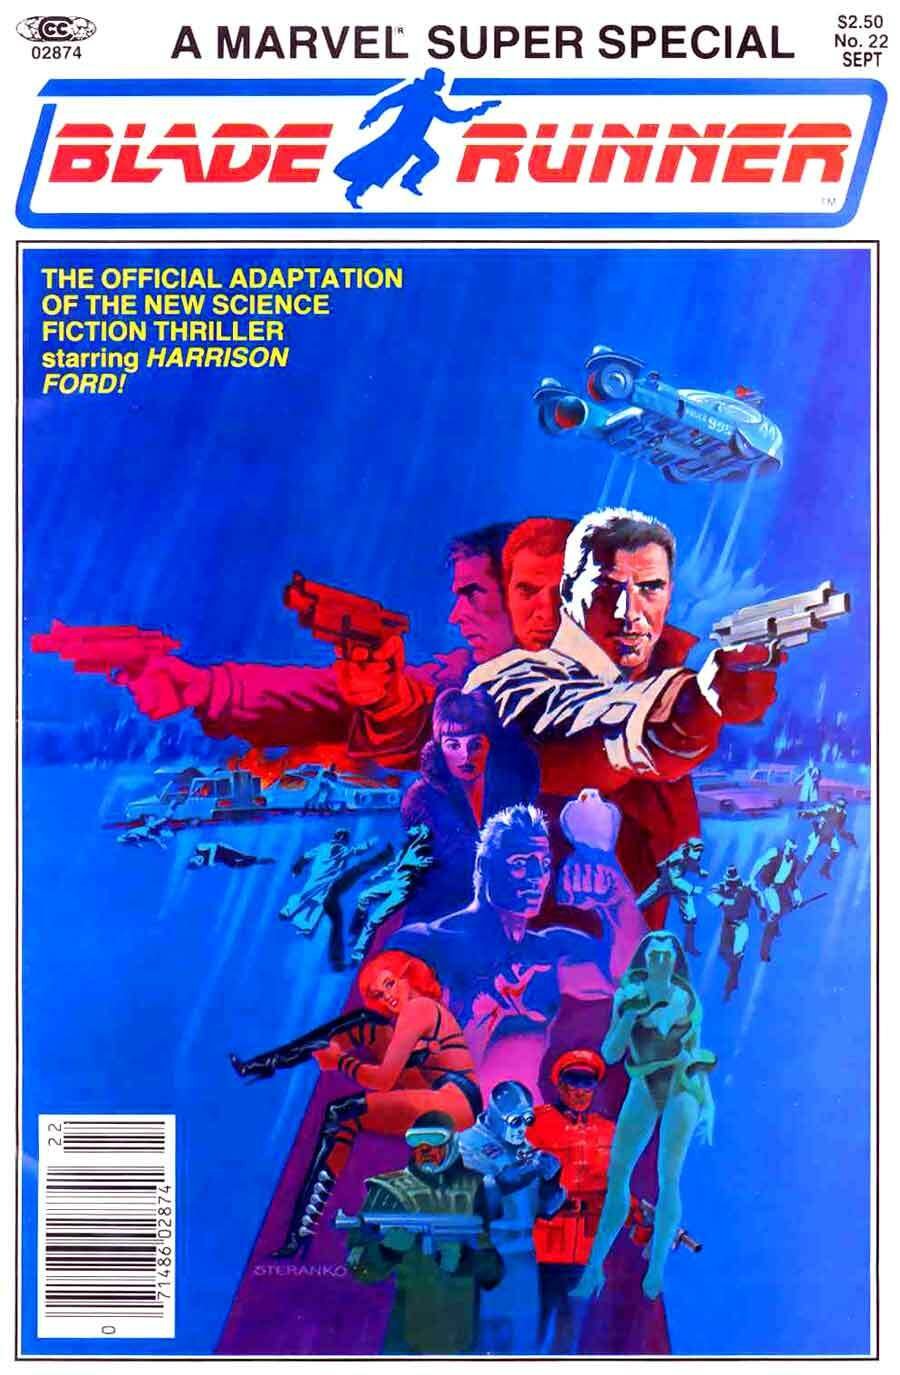 Copertina di Jim Steranko per il fumetto di Blade Runner